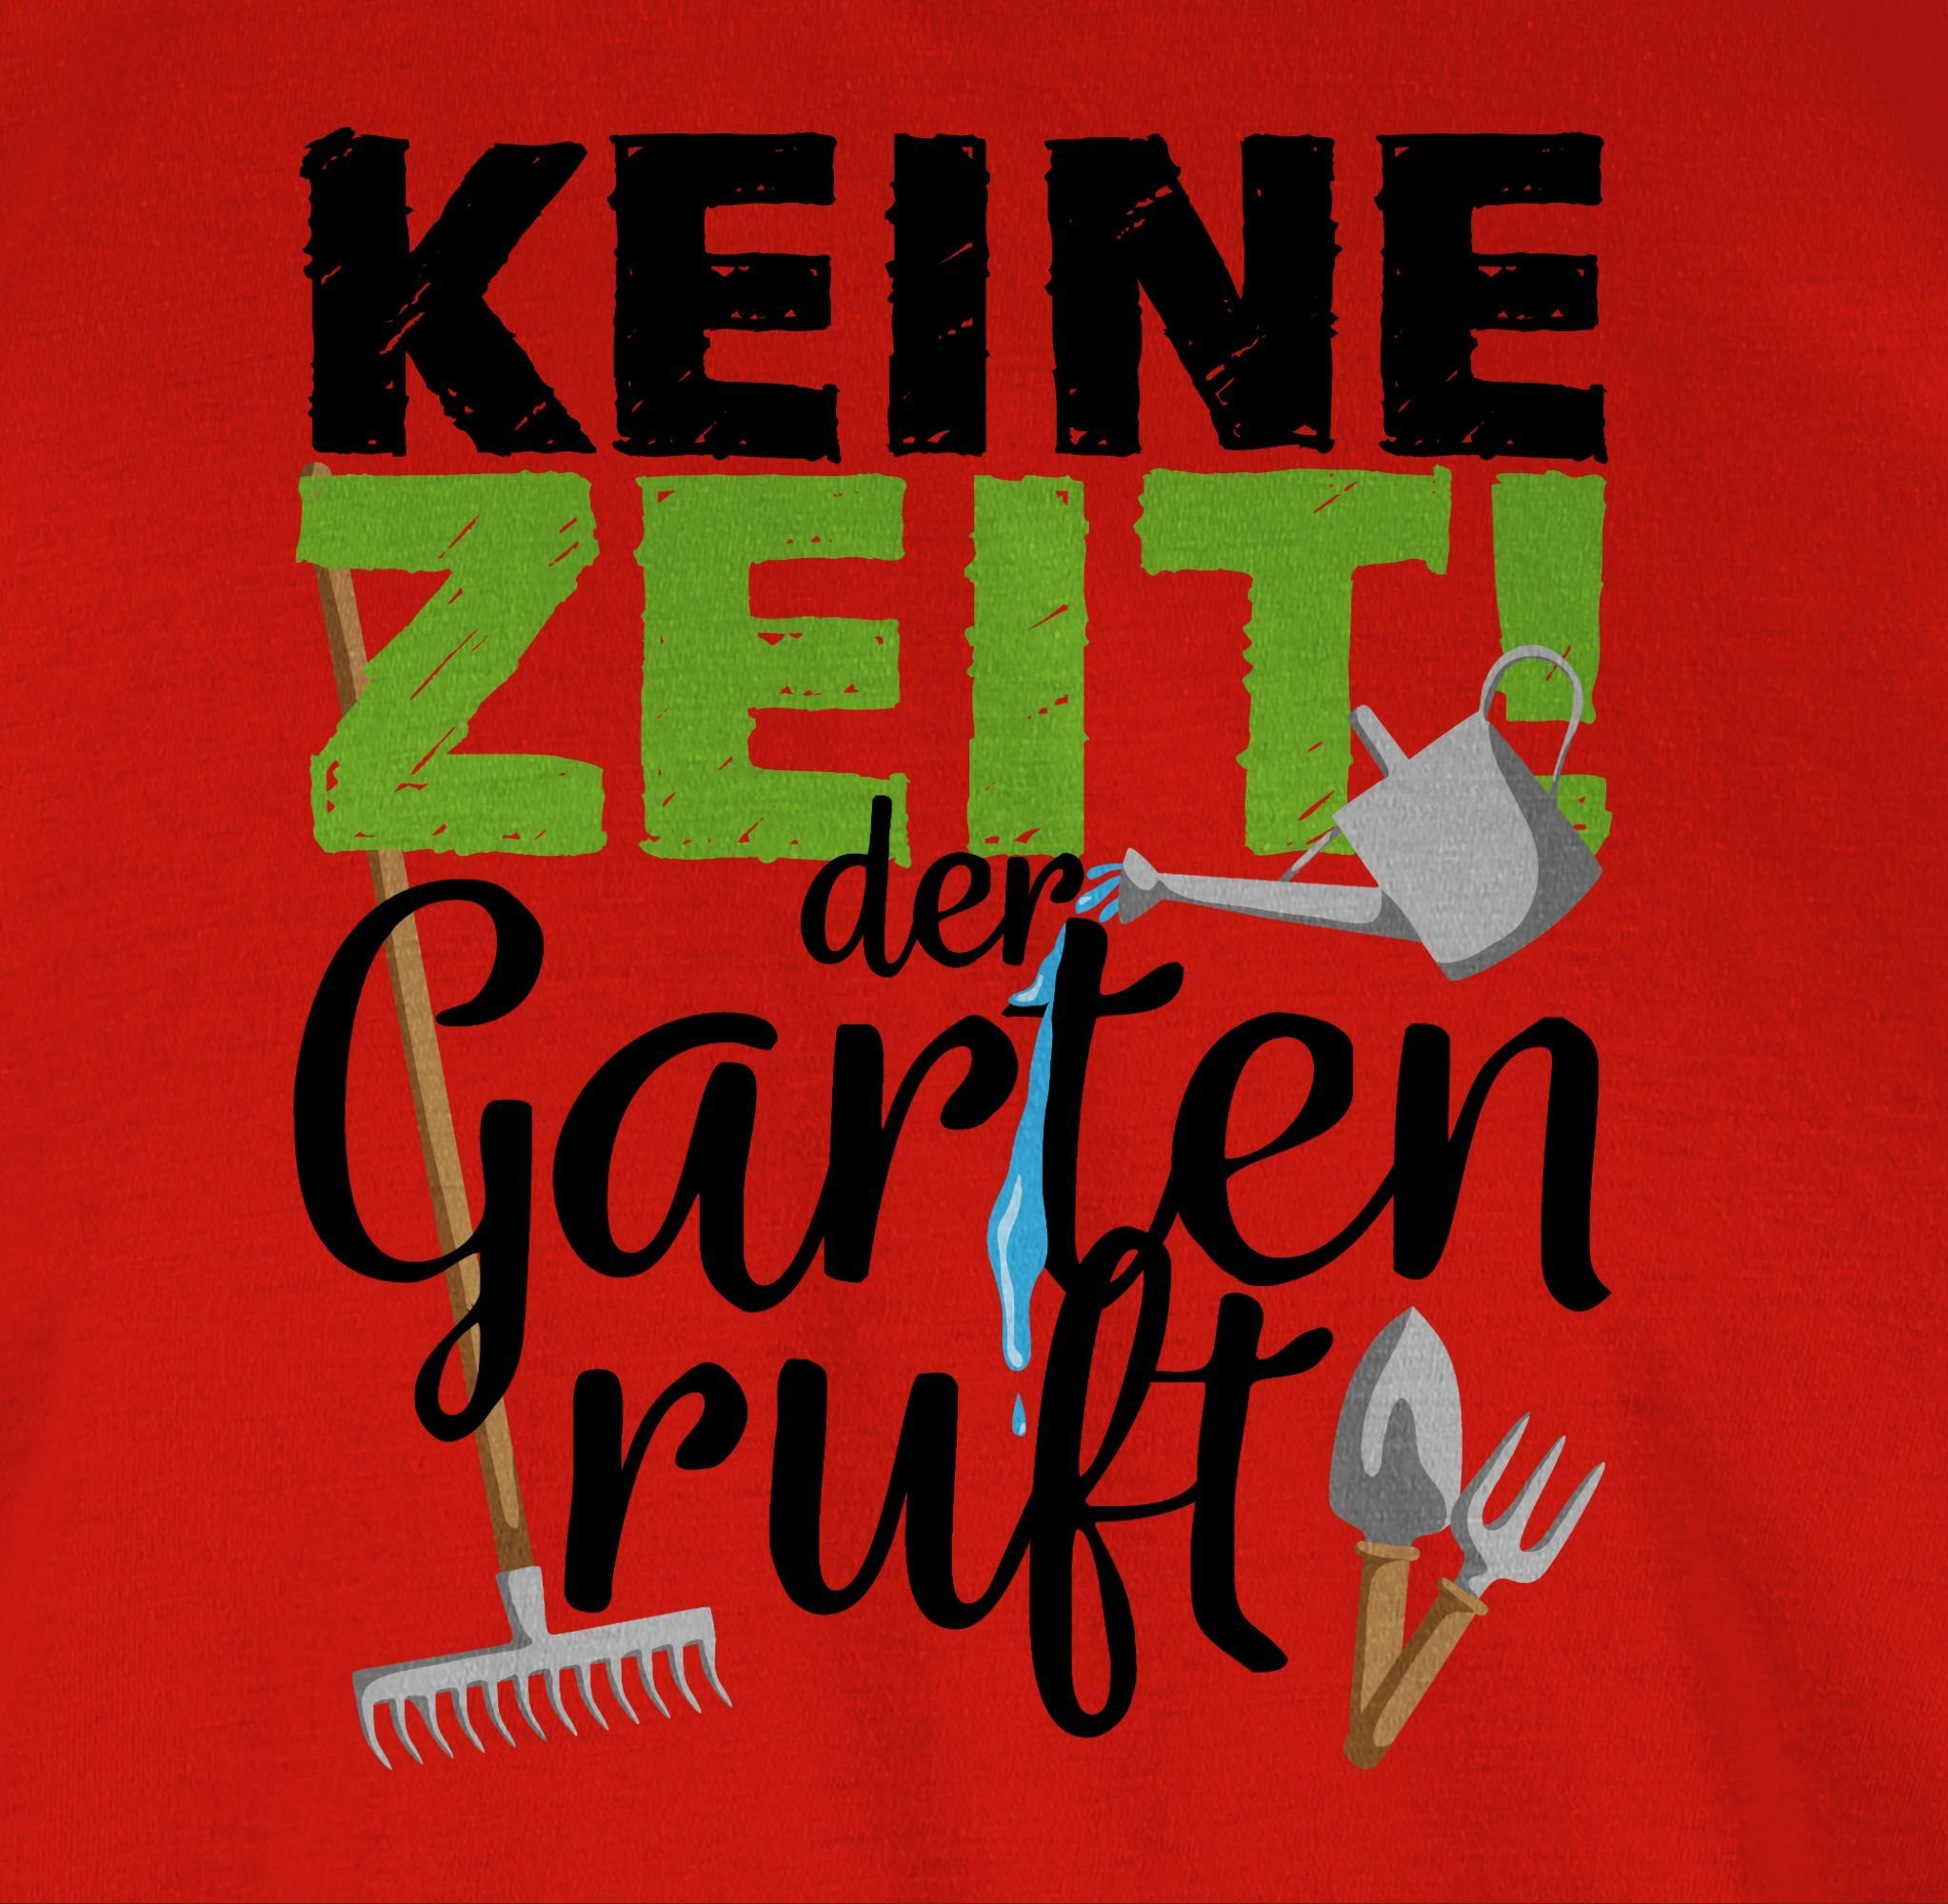 T-Shirt Zeit Keine 3 ruft Gartengeräte Hobby Rot Shirtracer - Garten der Outfit